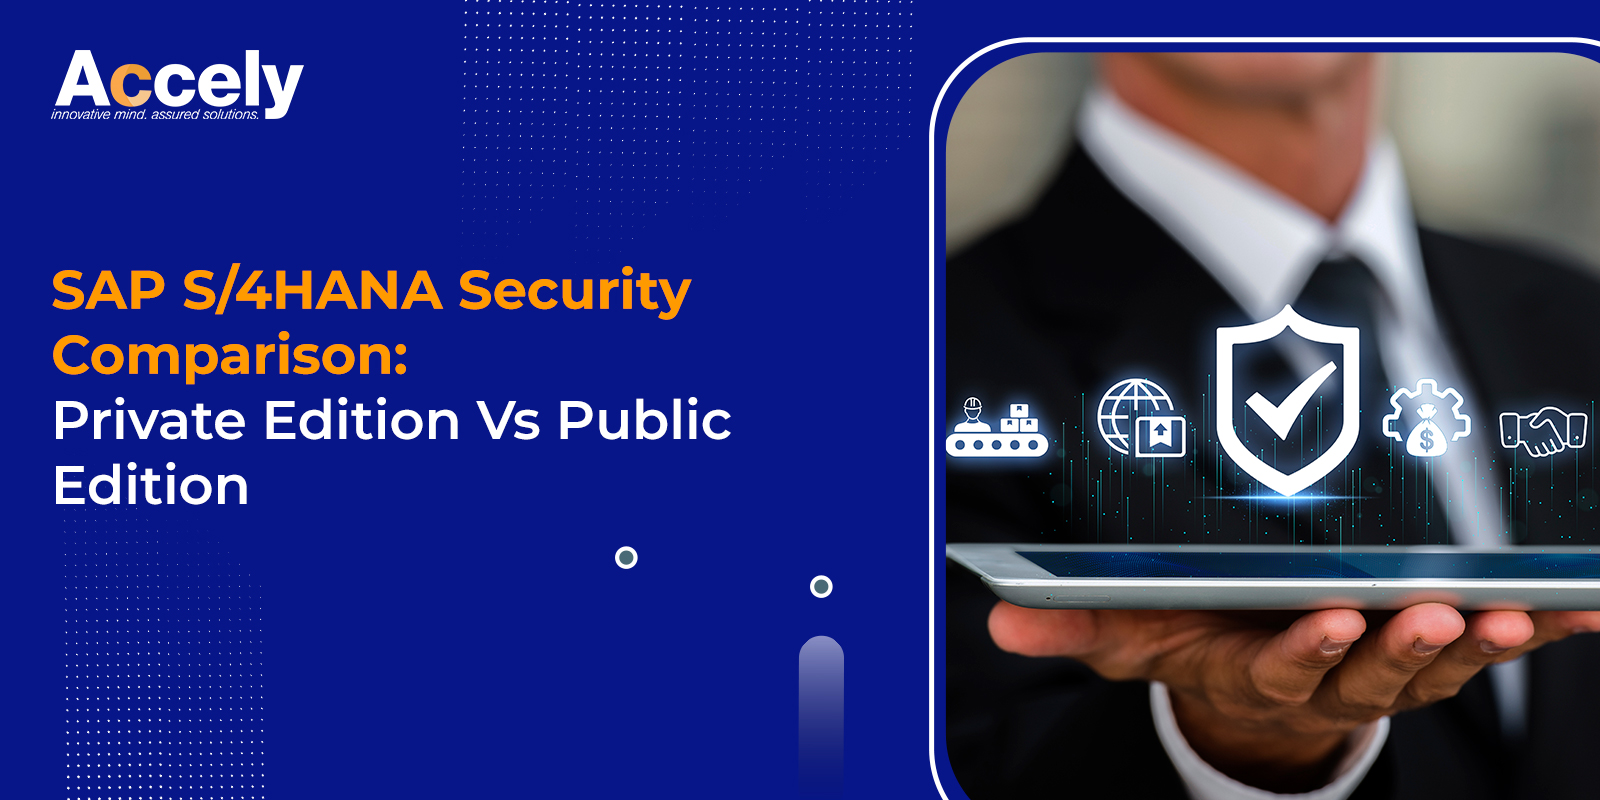 SAP S/4HANA Security Comparison: Private Edition Vs Public Edition